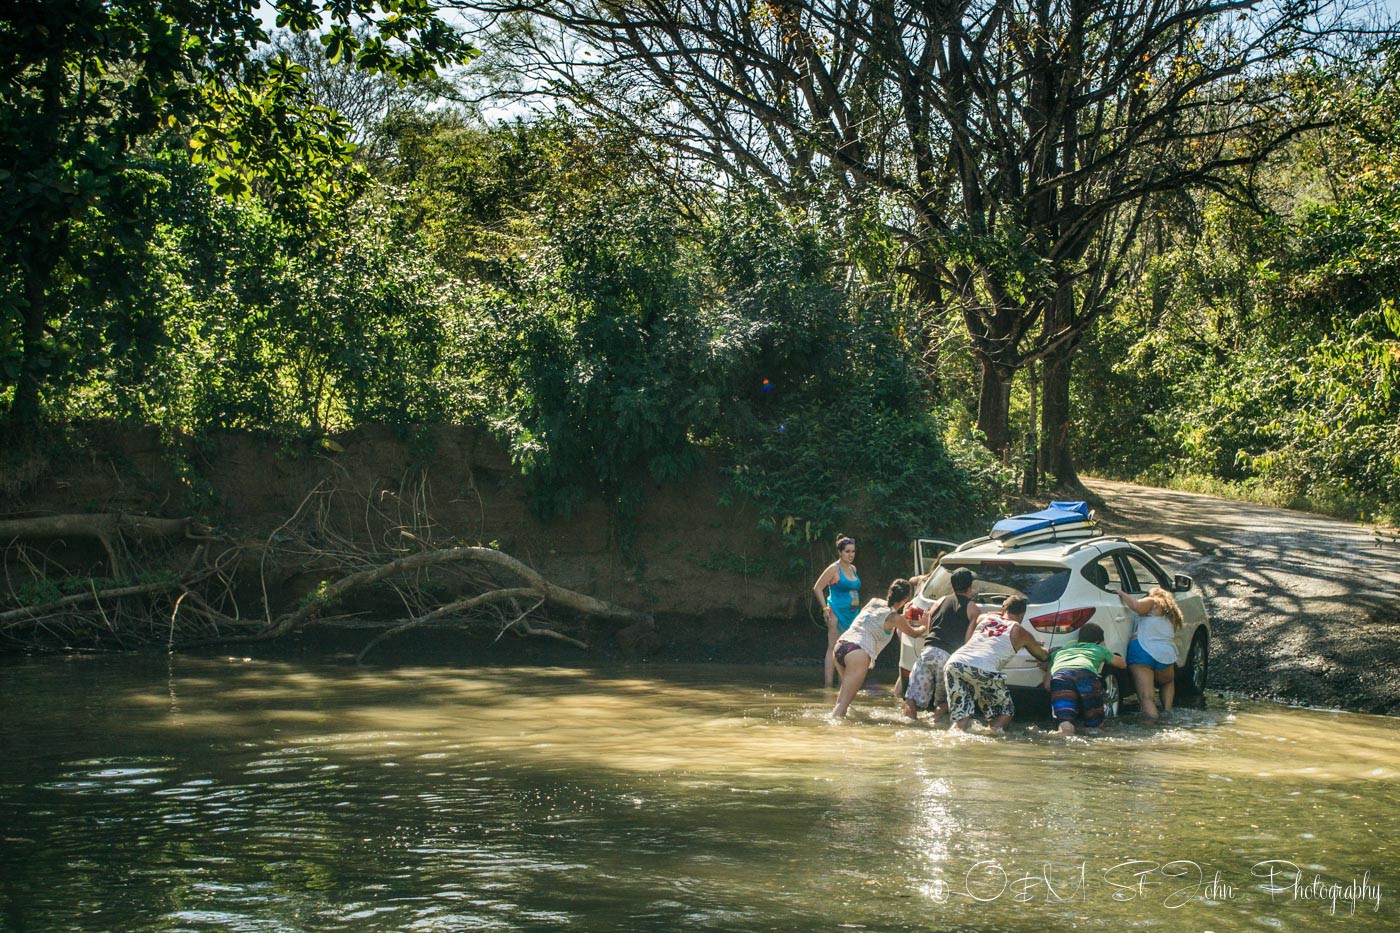 Car stuck in a river in Costa Rica